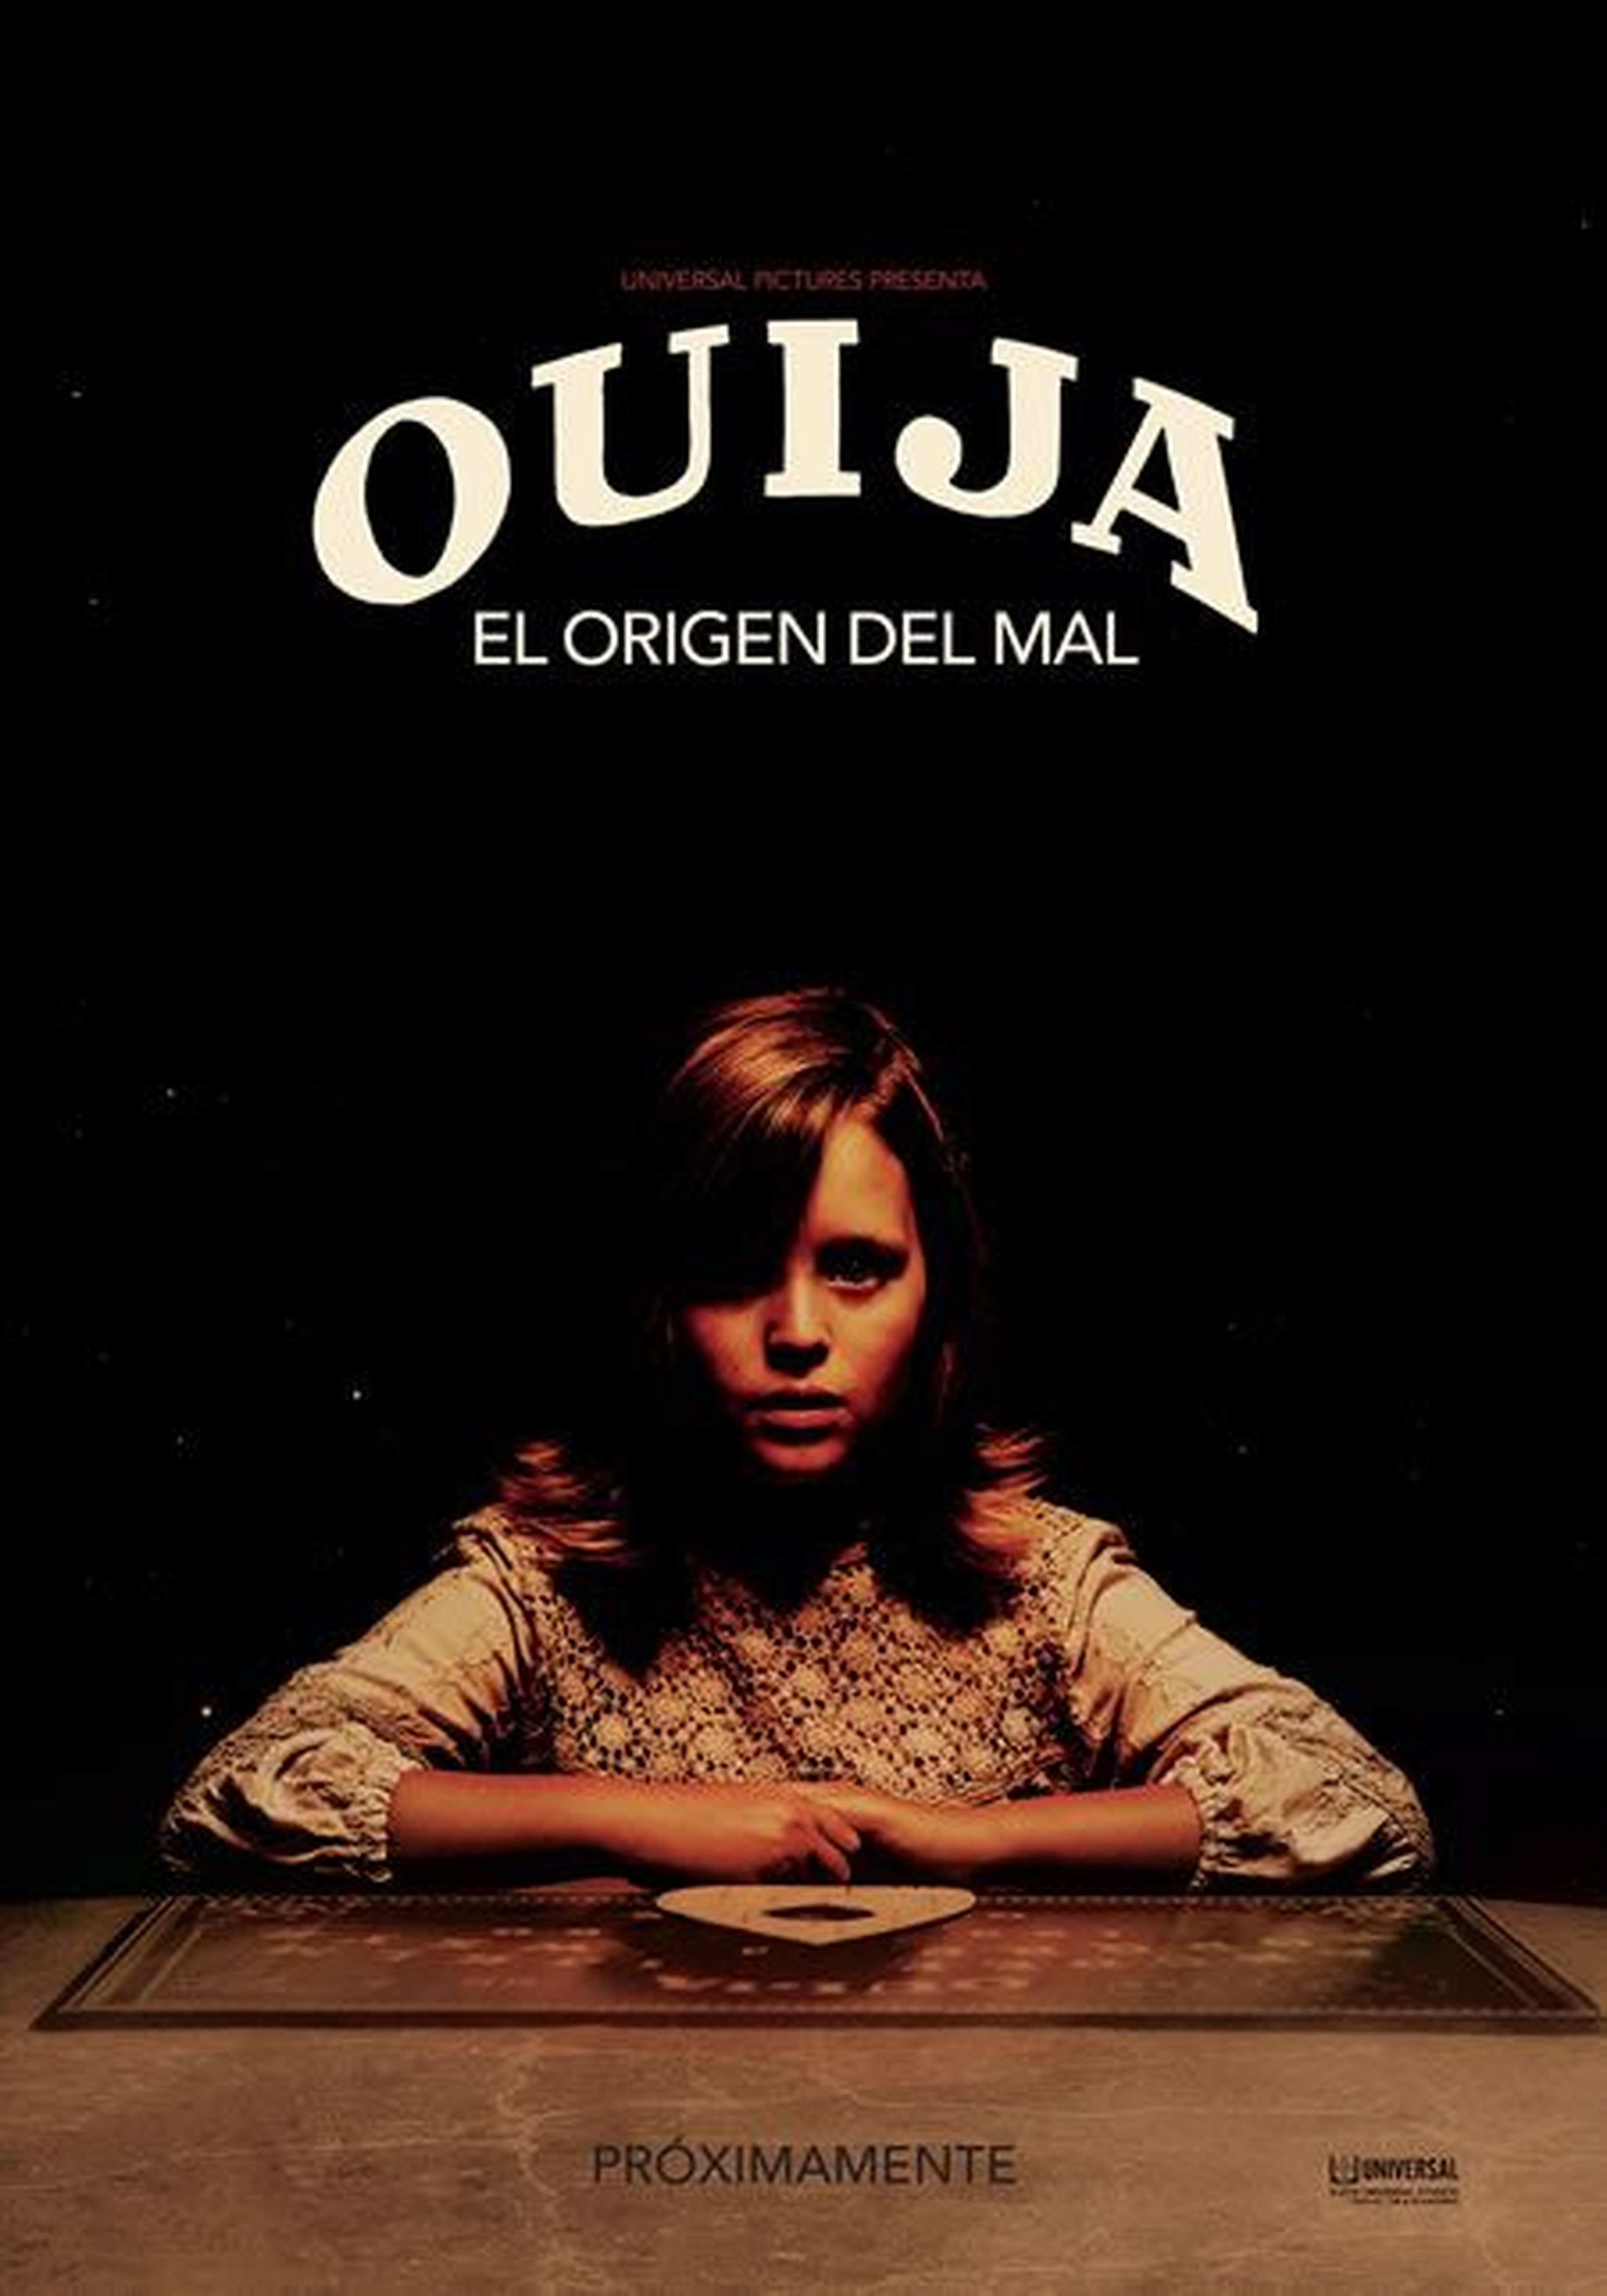 Ouija: El origen del mal – Argumento, tráiler oficial y póster en español